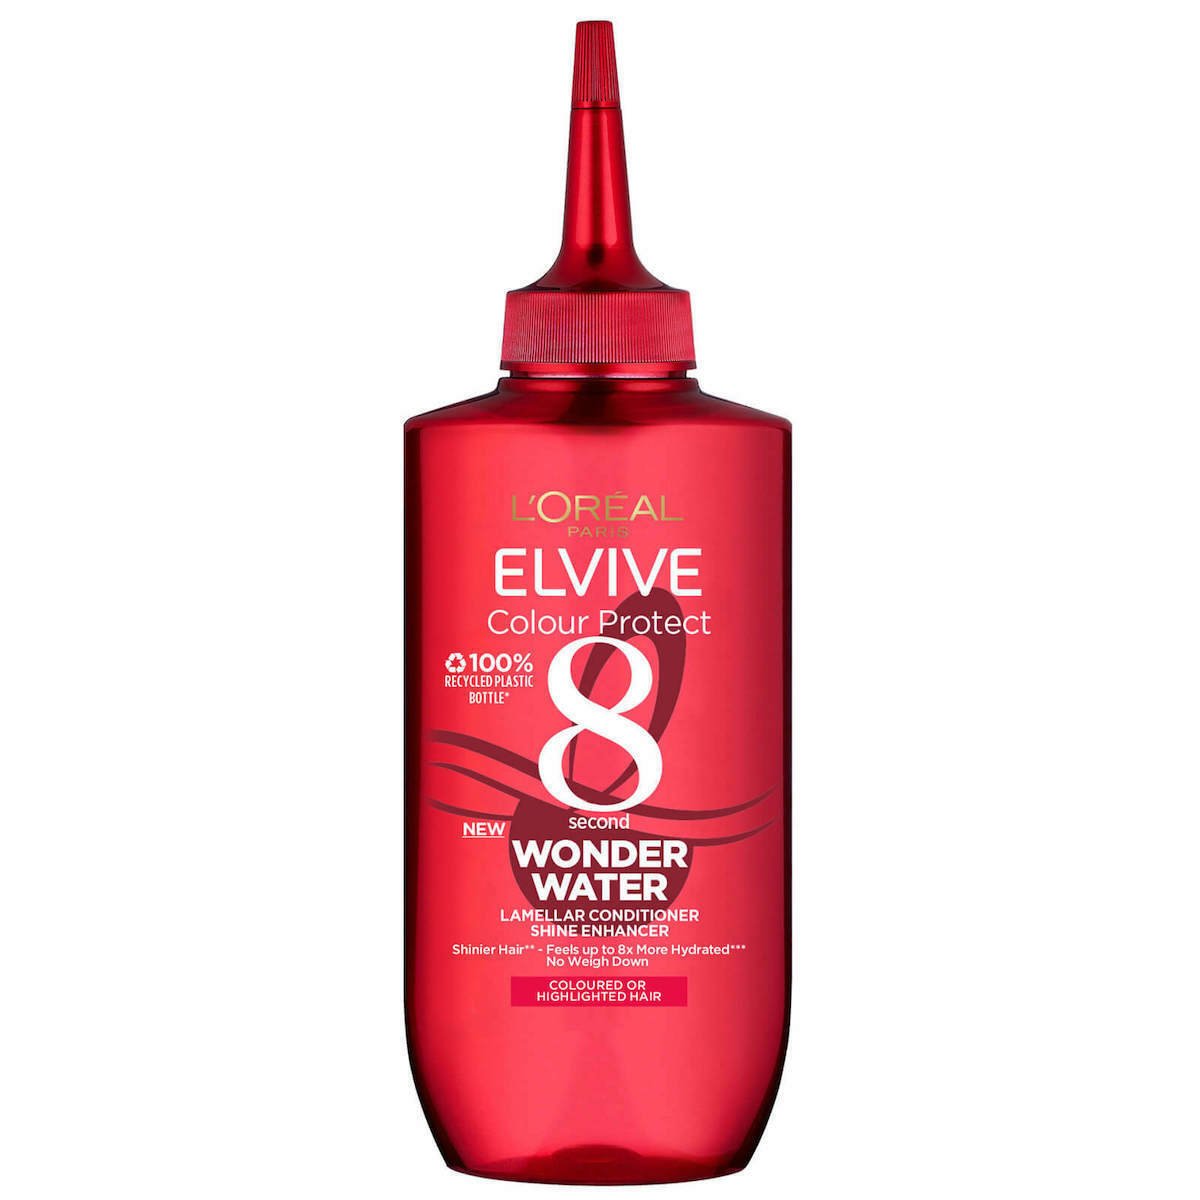 L Oreal Paris Elvive Colour Protect Wonder Water 8 Second Hair Treatment 200ml Skroutz Gr